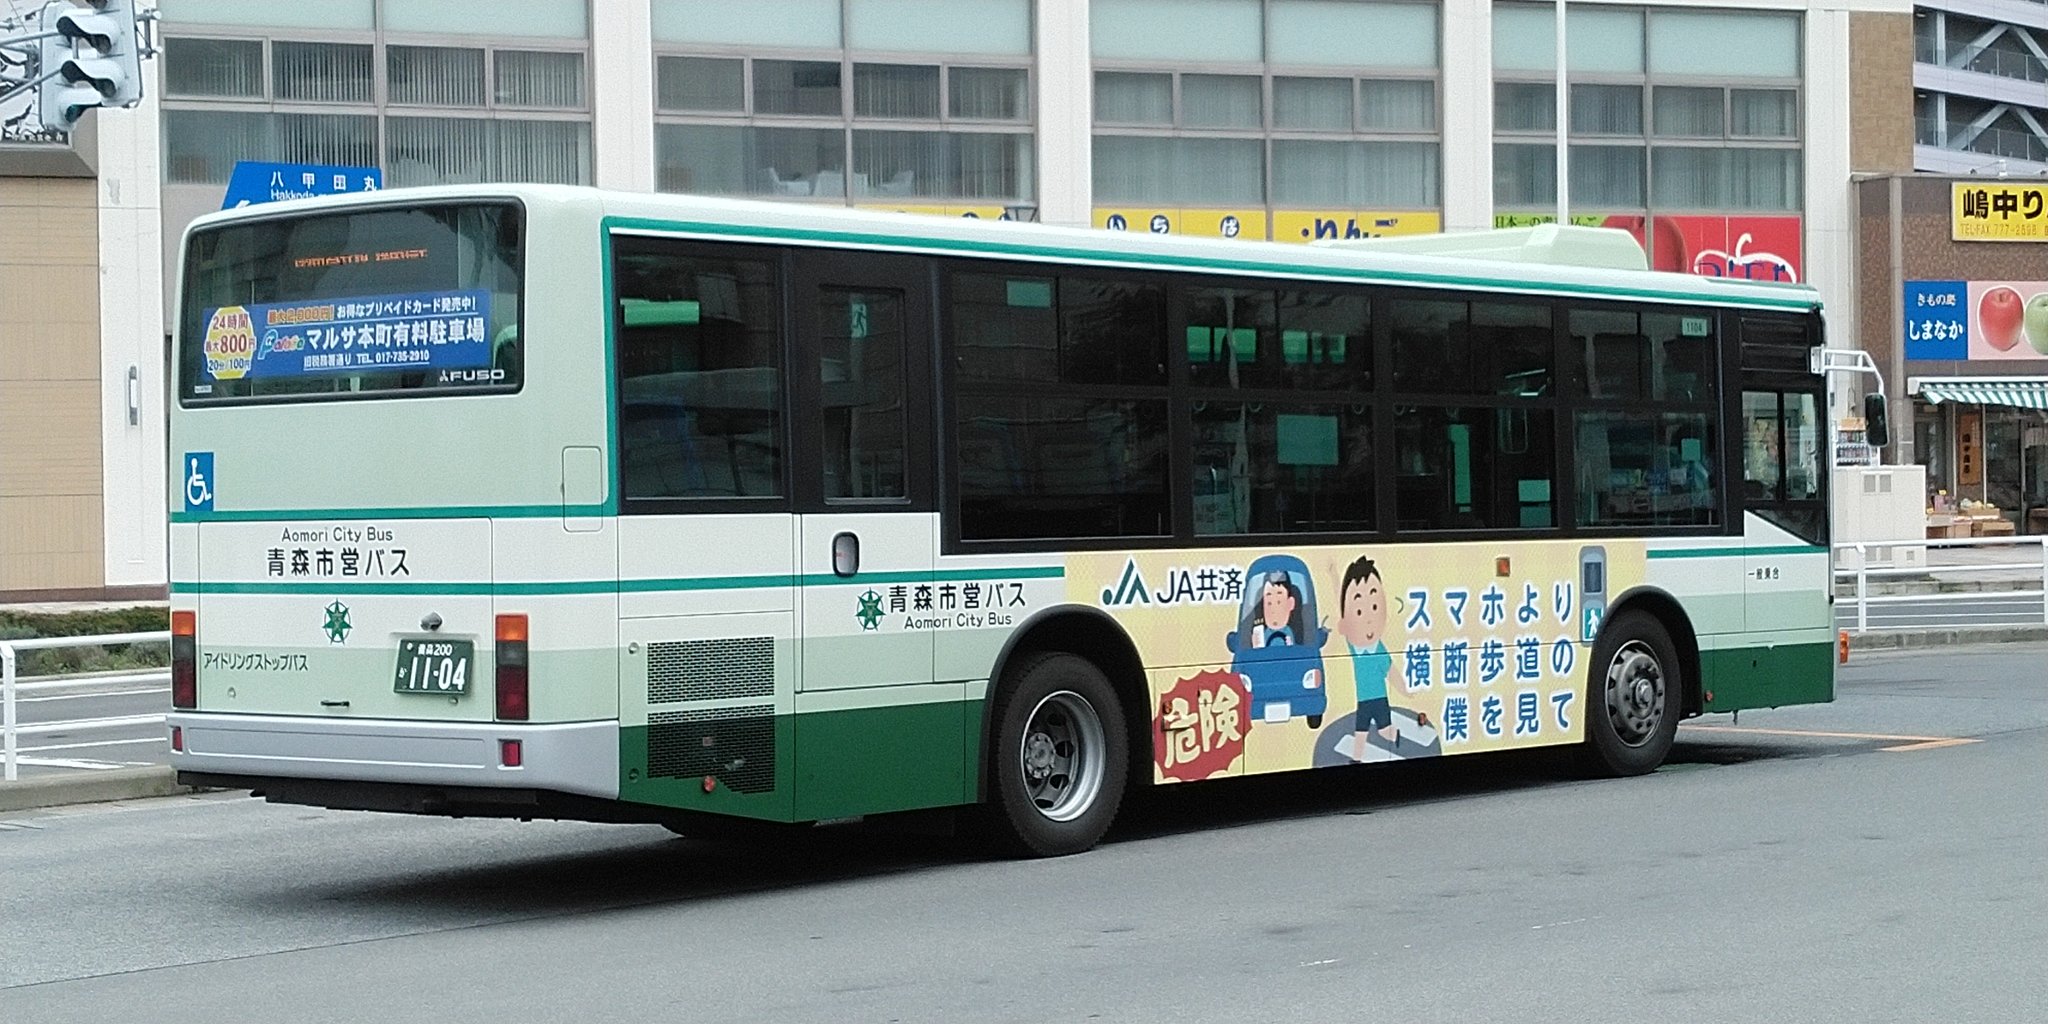 こーへぃ 青森市営バス いらすとや のイラストを使ったja共済のラッピングバスは1104号車と1107号車の2台在籍しています T Co M6pzntoika Twitter